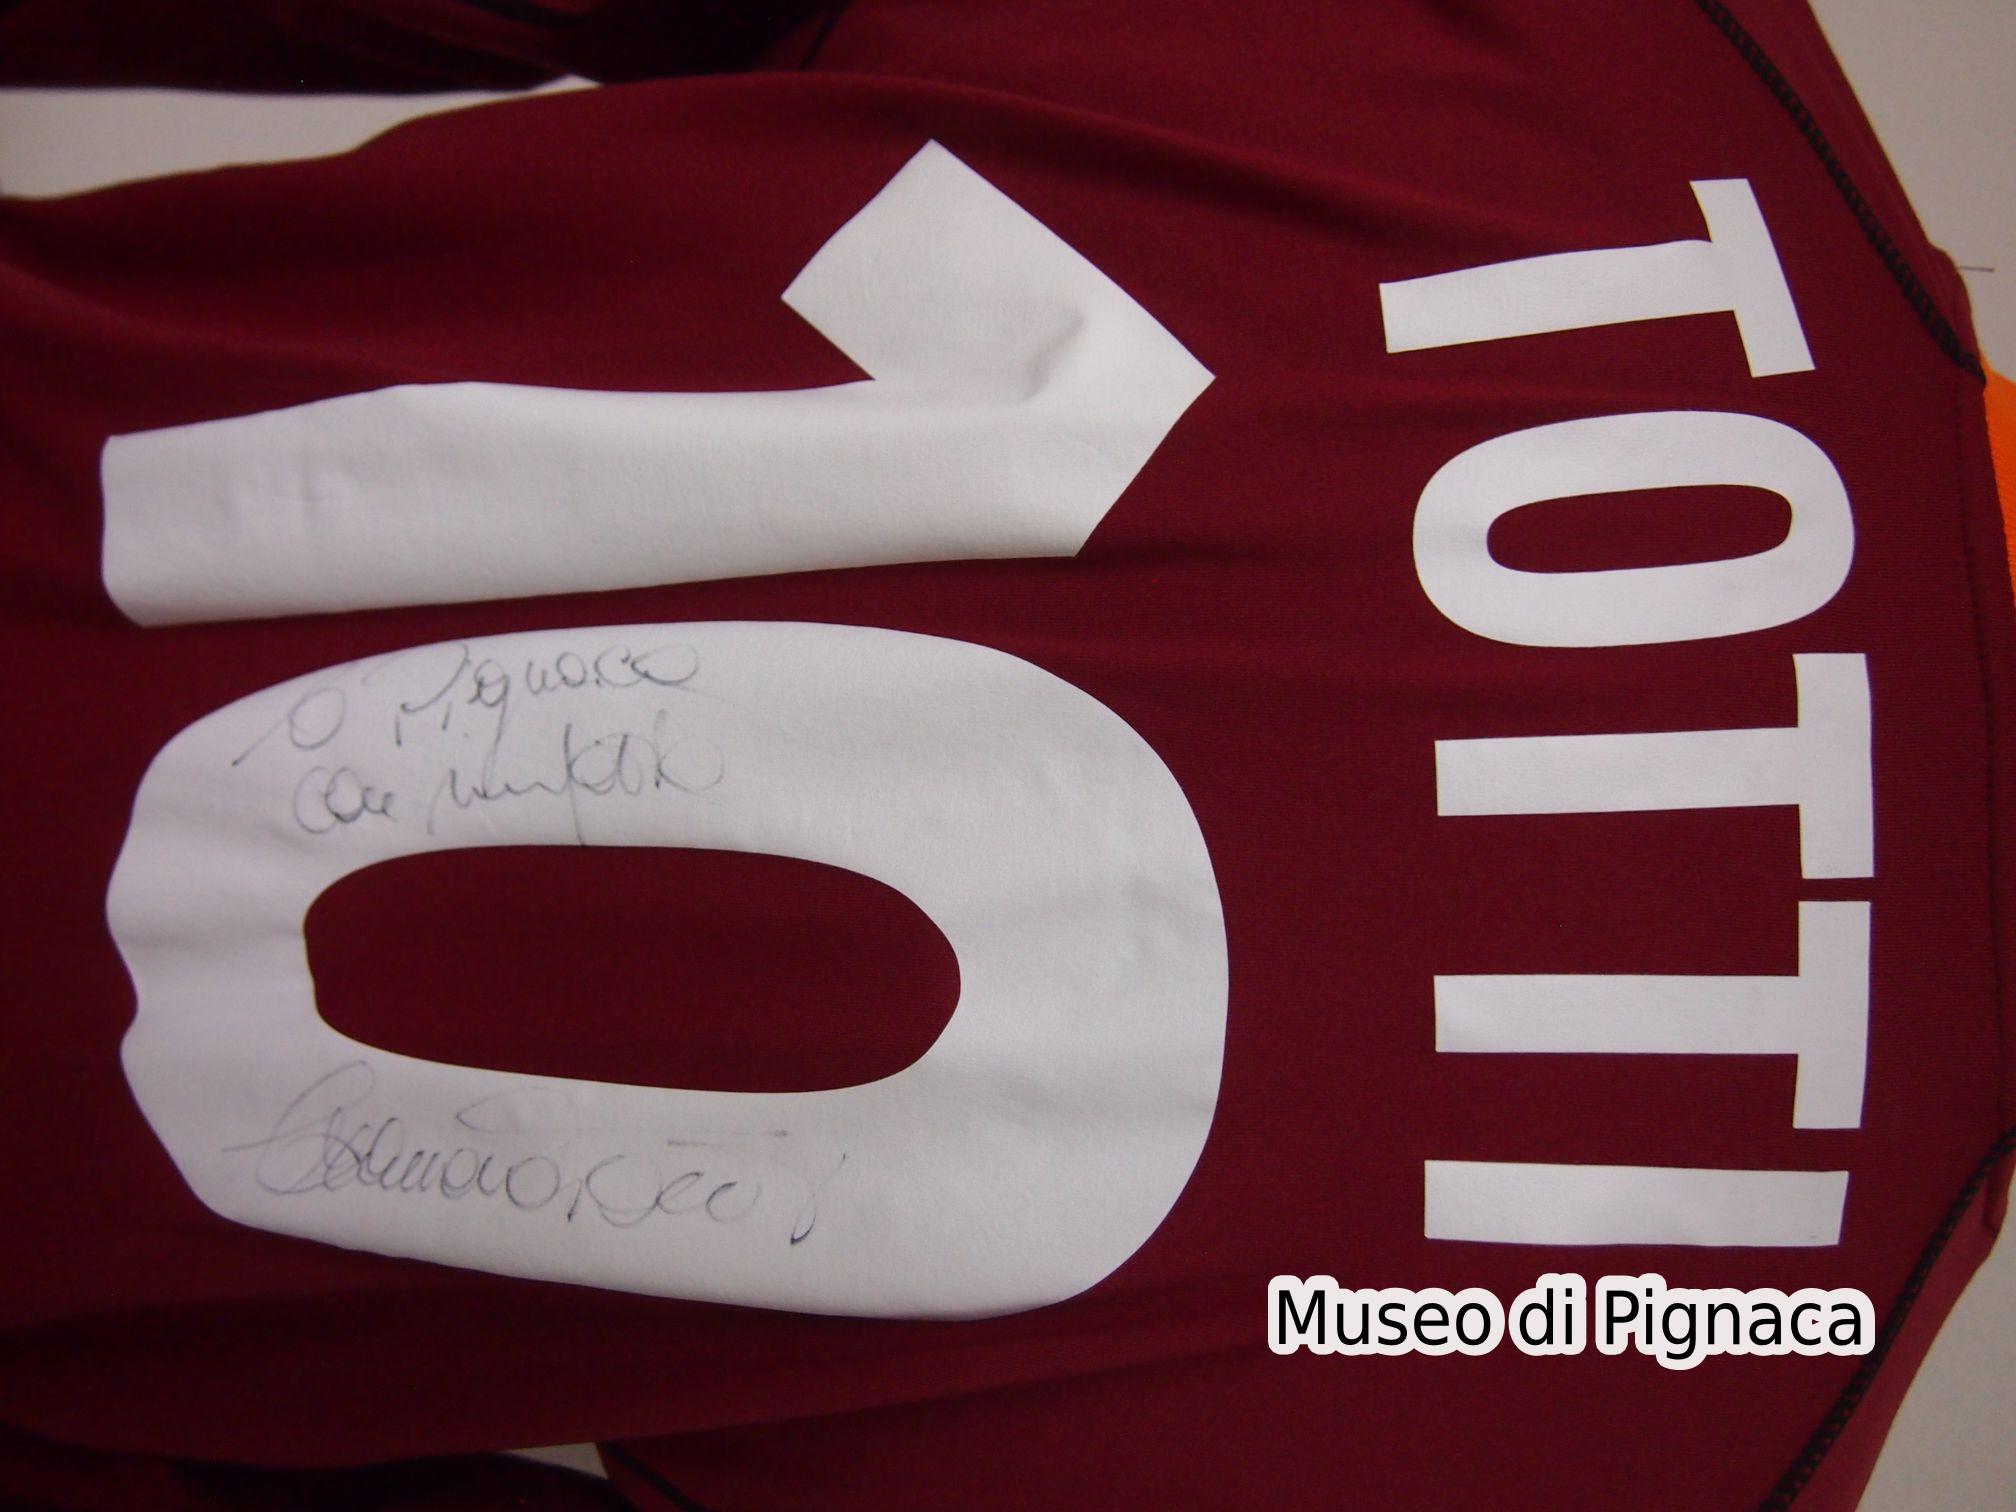 Francesco Totti - Maglia Roma 2001-02 (dettaglio firma)